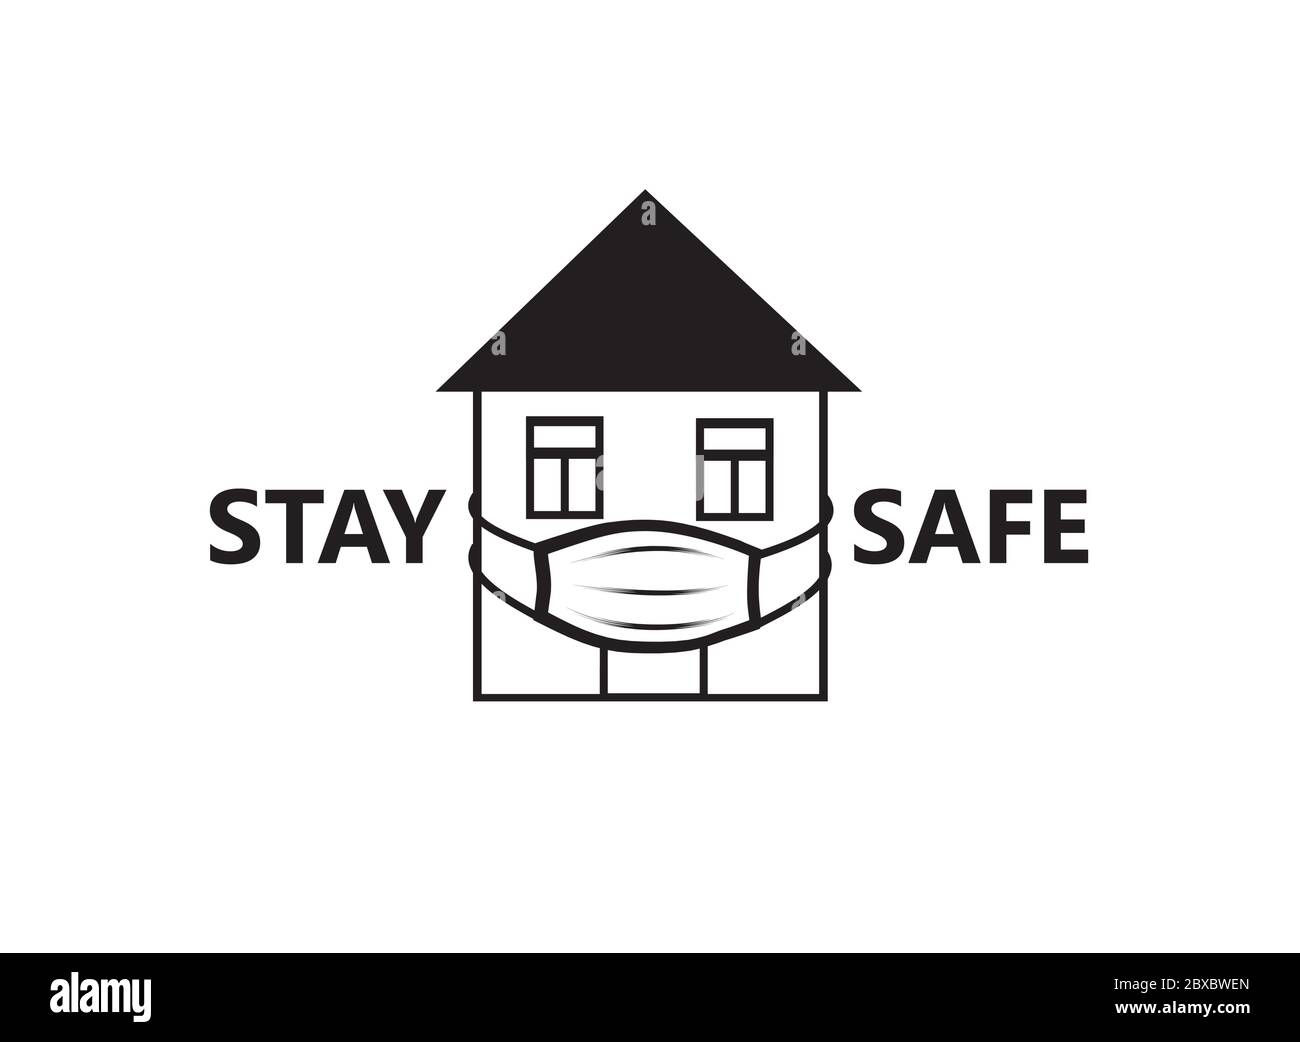 Quarantänezeichen. Crestative Symbol mit Haus, trägt medizinische Maske und Schriftzug "Stay Home", "Stay Safe" auf weißem Hintergrund. Stock Vektor